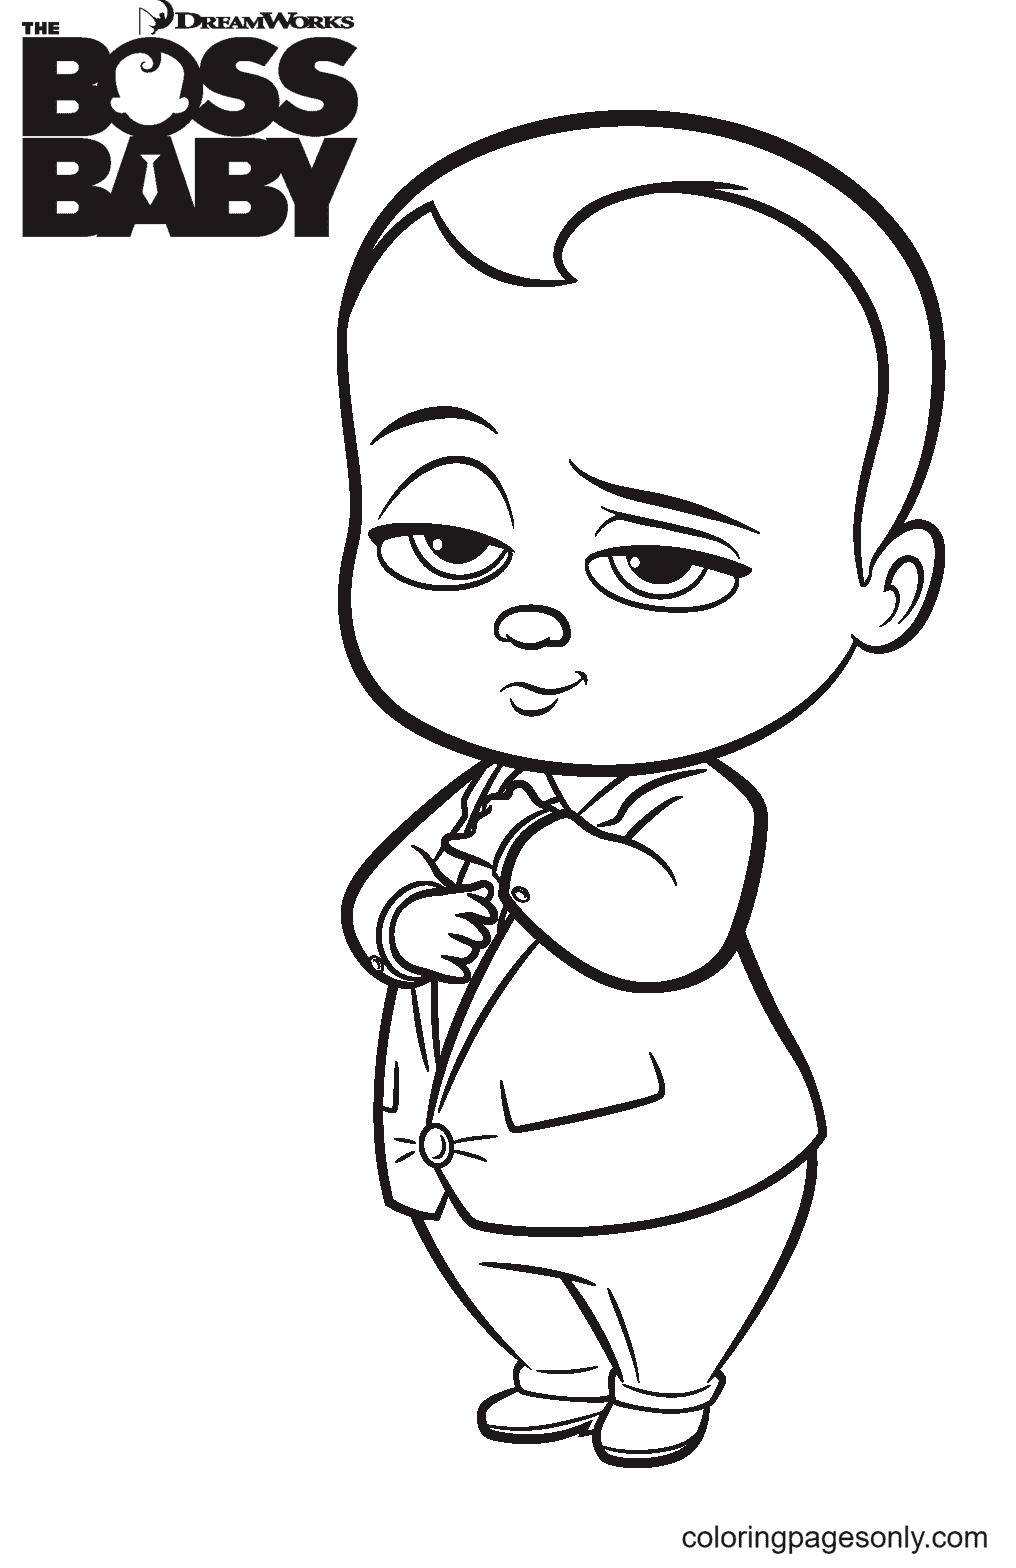 Dibujo para colorear jefe bebe